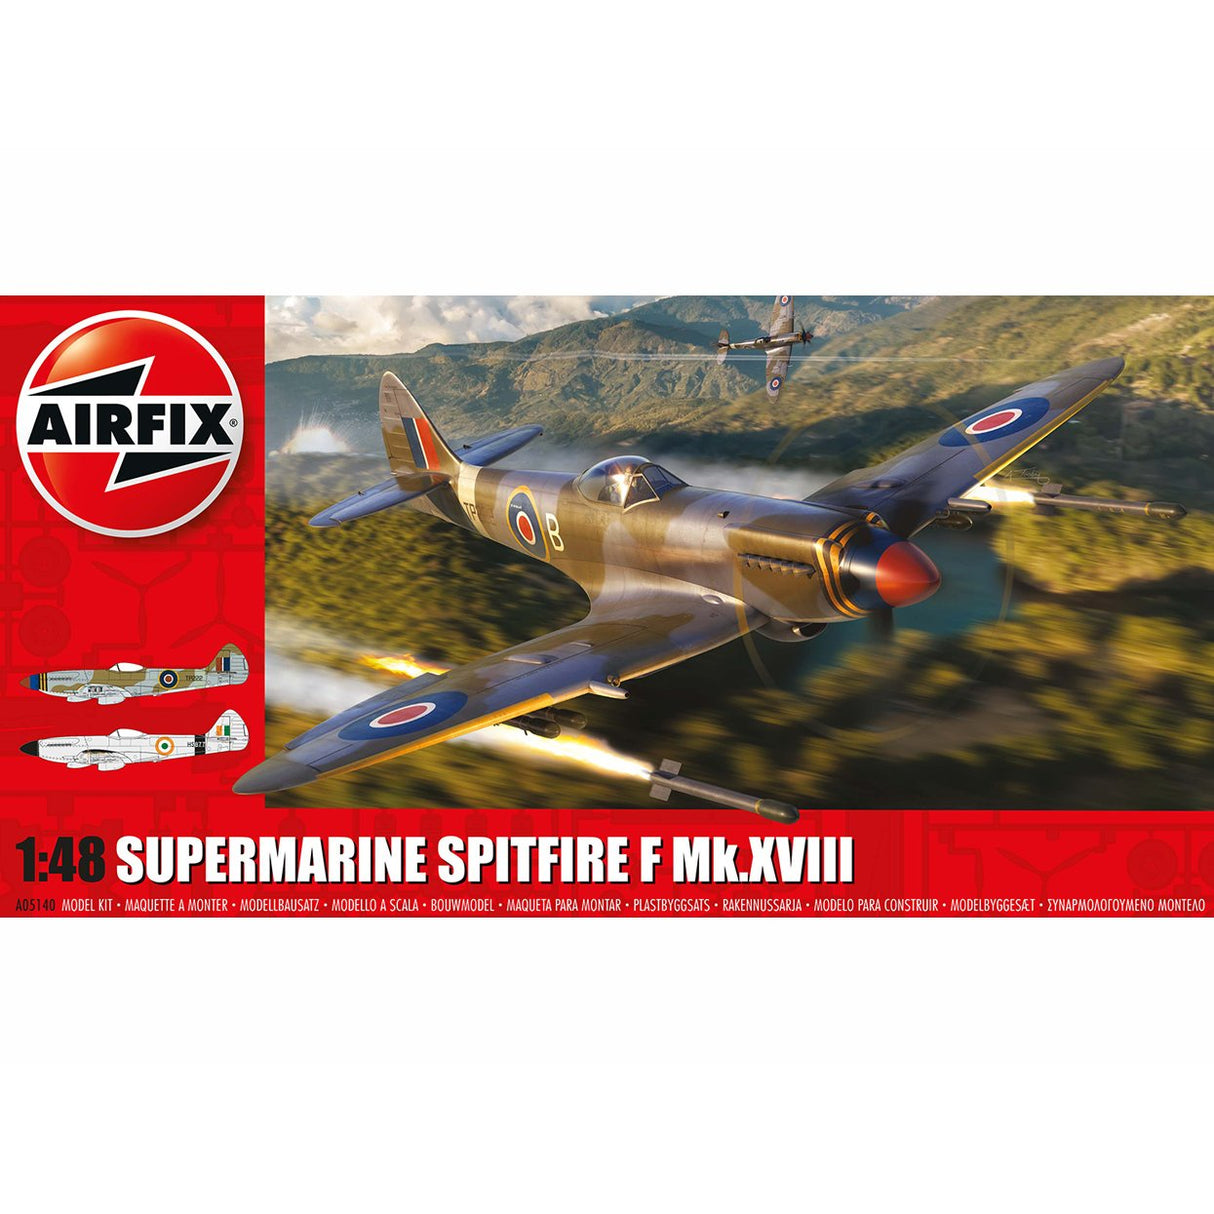 Airfix 1:48 Supermarine Spitfire F Mk.XVIII